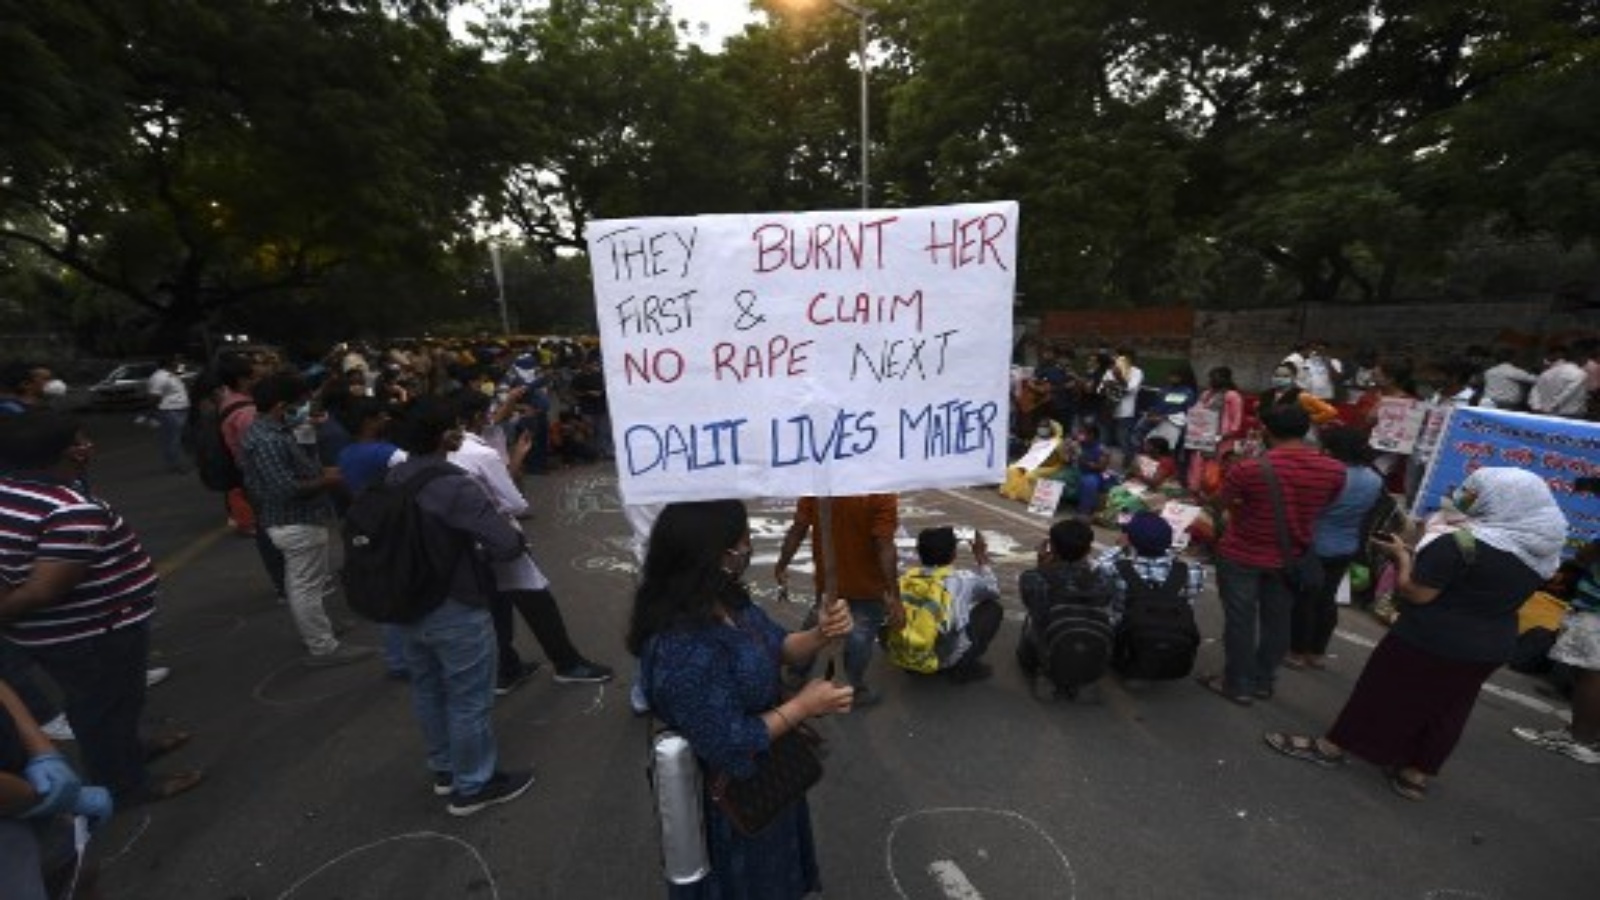 متظاهرة تحمل لافتة خلال احتجاج على الاغتصاب الجماعي المزعوم وقتل امرأة تبلغ من العمر 19 عامًا في ولاية أوتار براديش في نيودلهي في 4 أكتوبر 2020